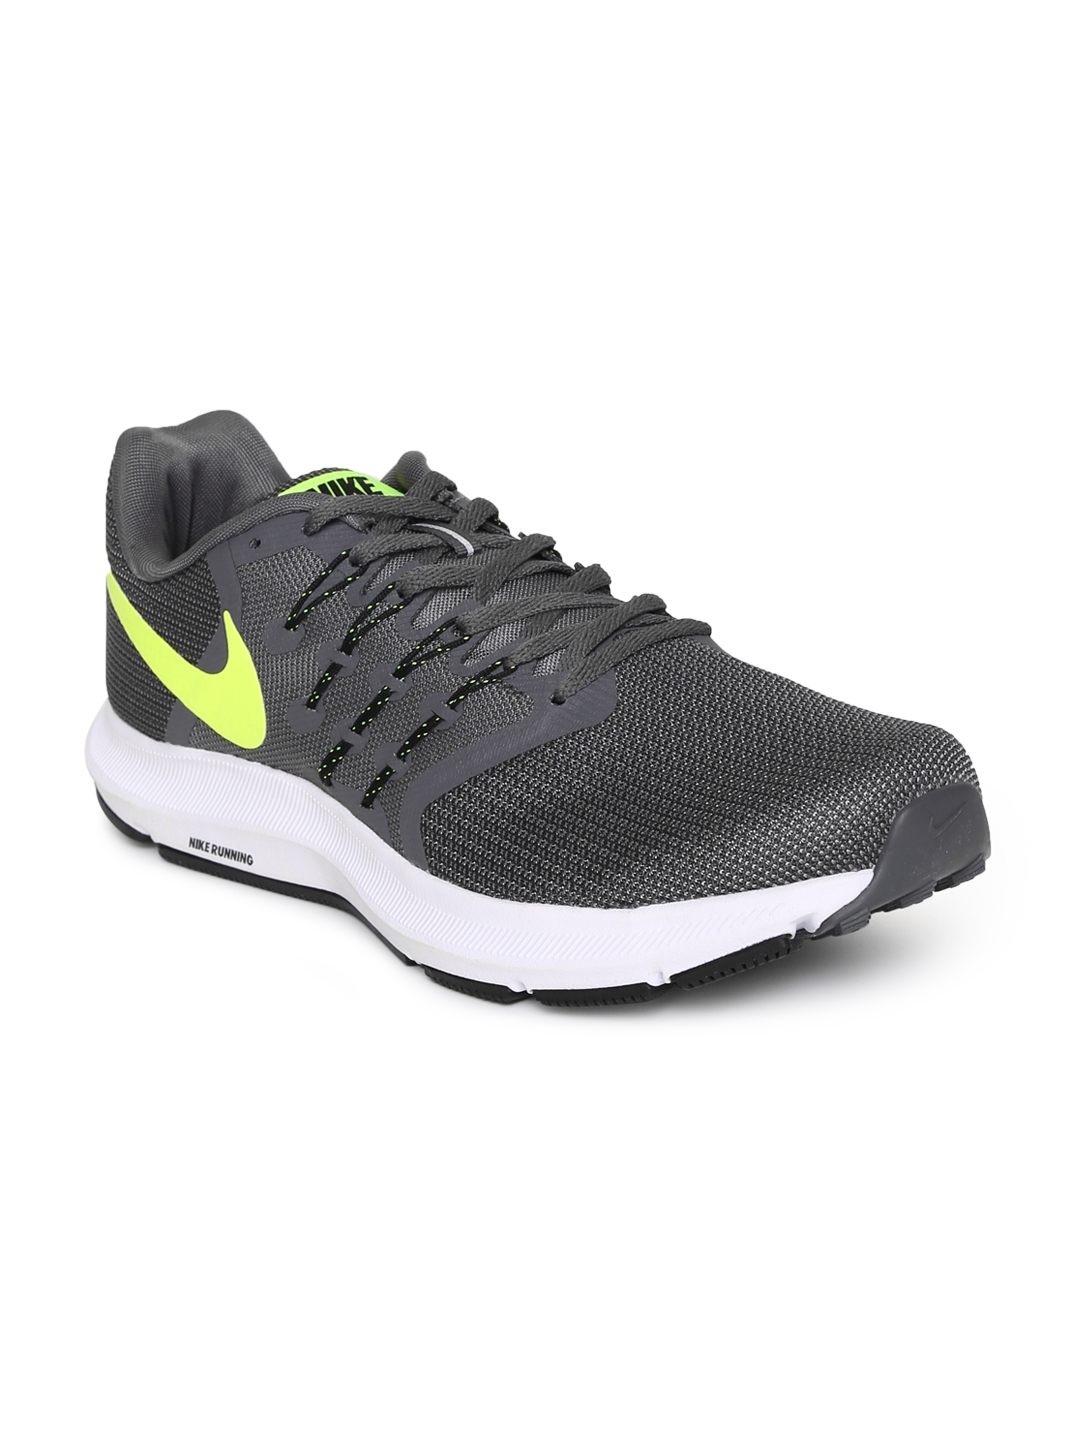 Nike Men Grey RUN SWIFT Running Shoes 